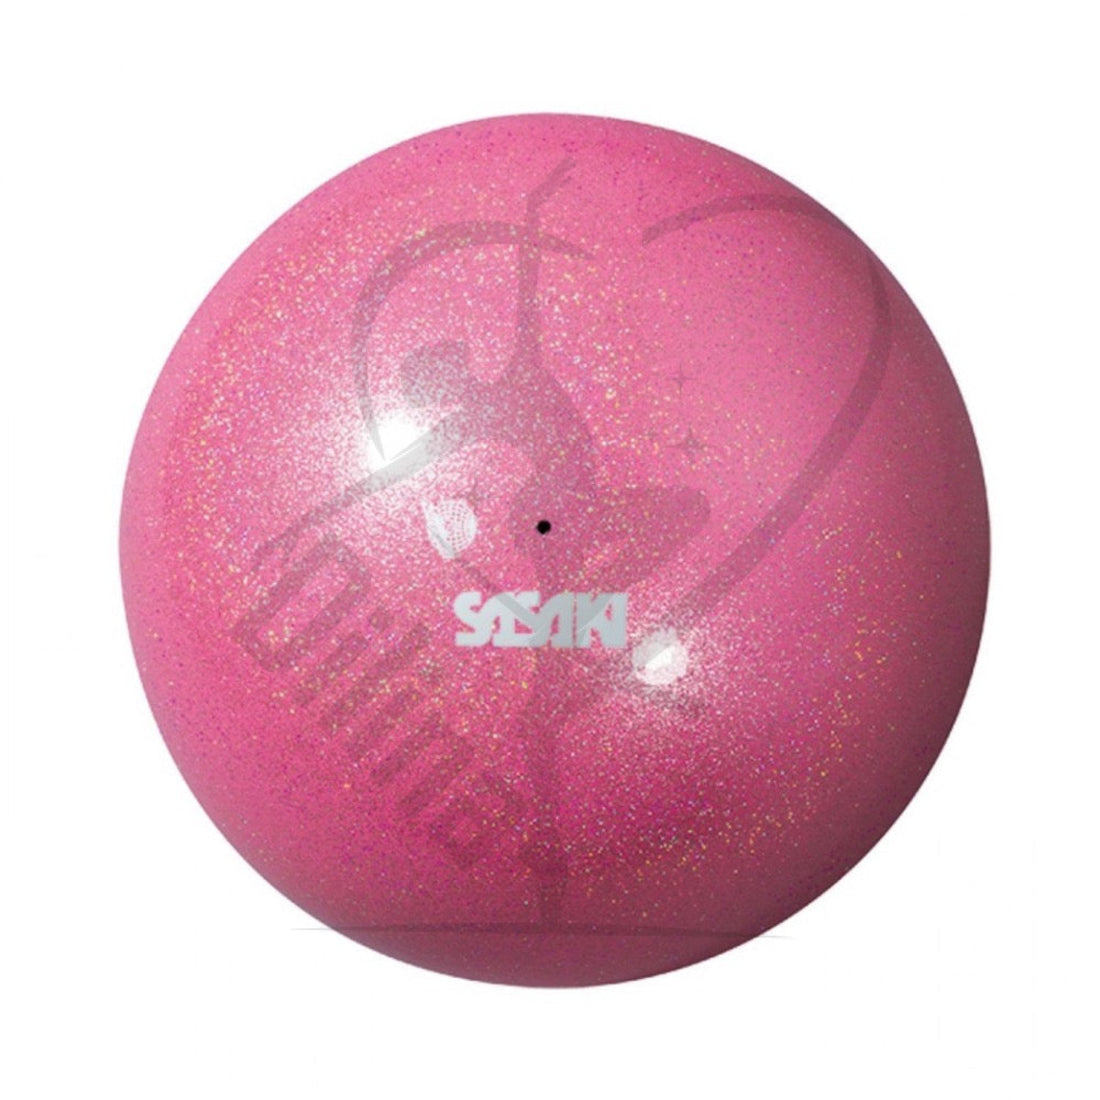 Sasaki Meetia Ball 18.5Cm Pastel Pink Balls